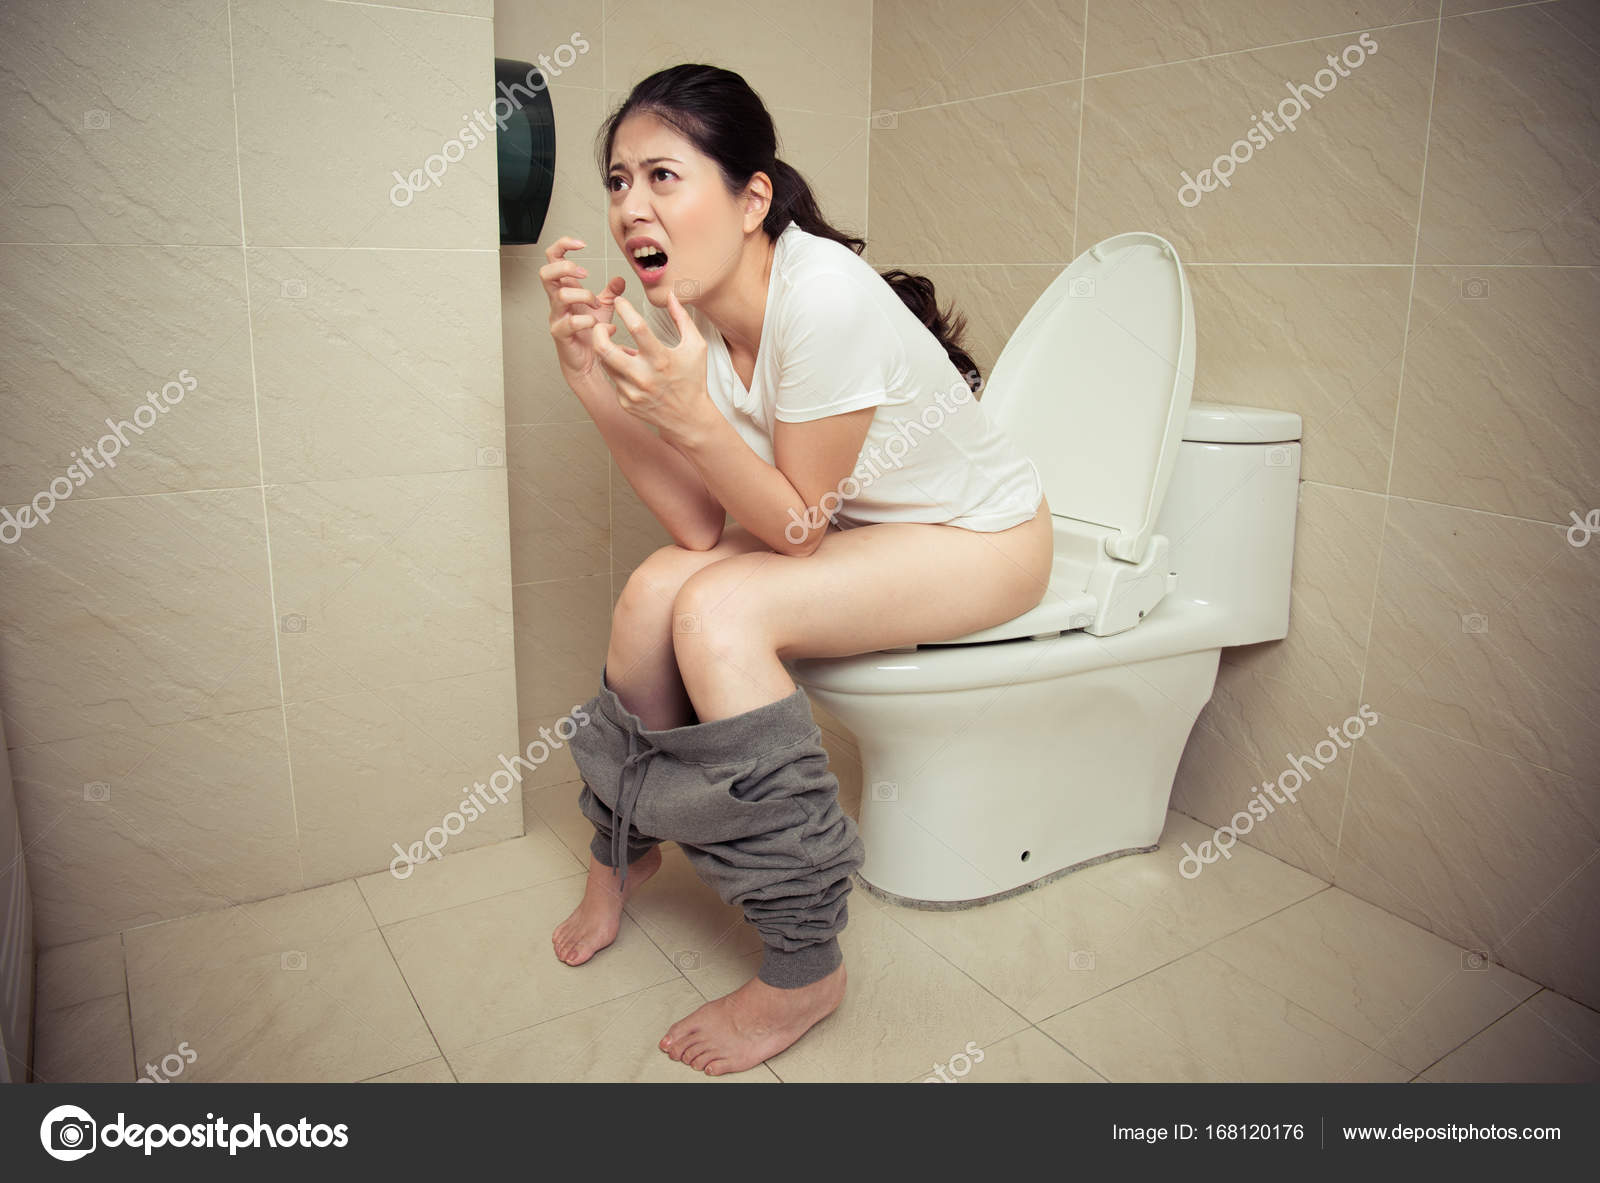 Brazlian girl explodes on the toilet